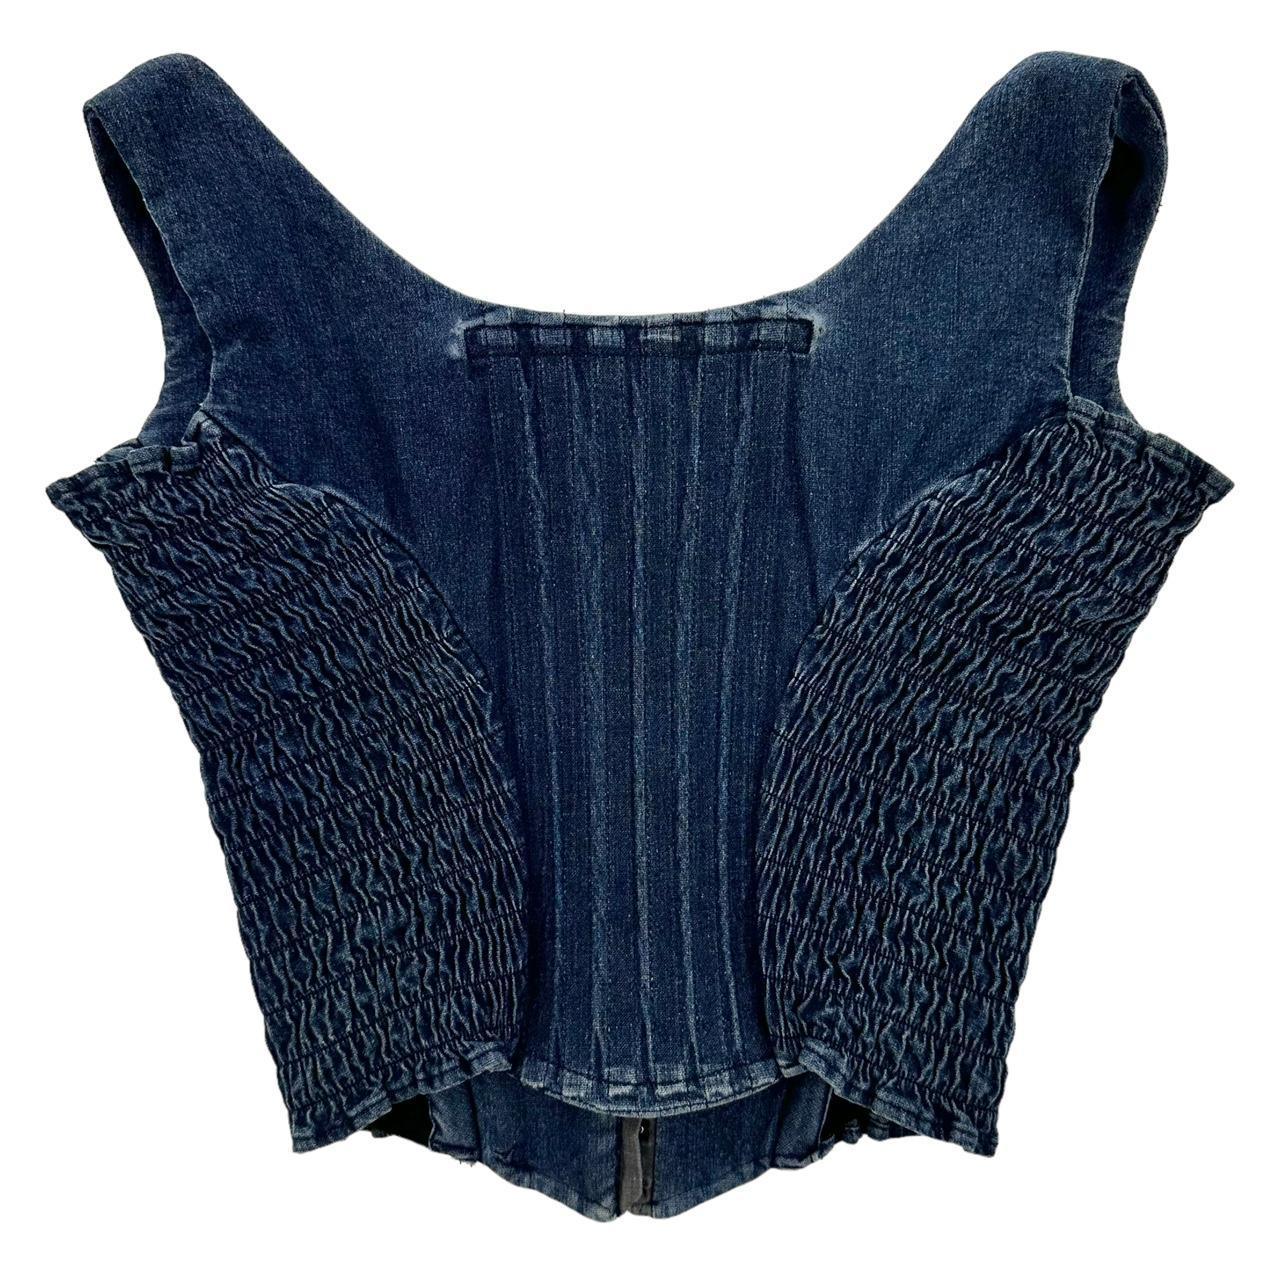 Vintage Vivienne Westwood denim corset woman’s size 8 - Known Source